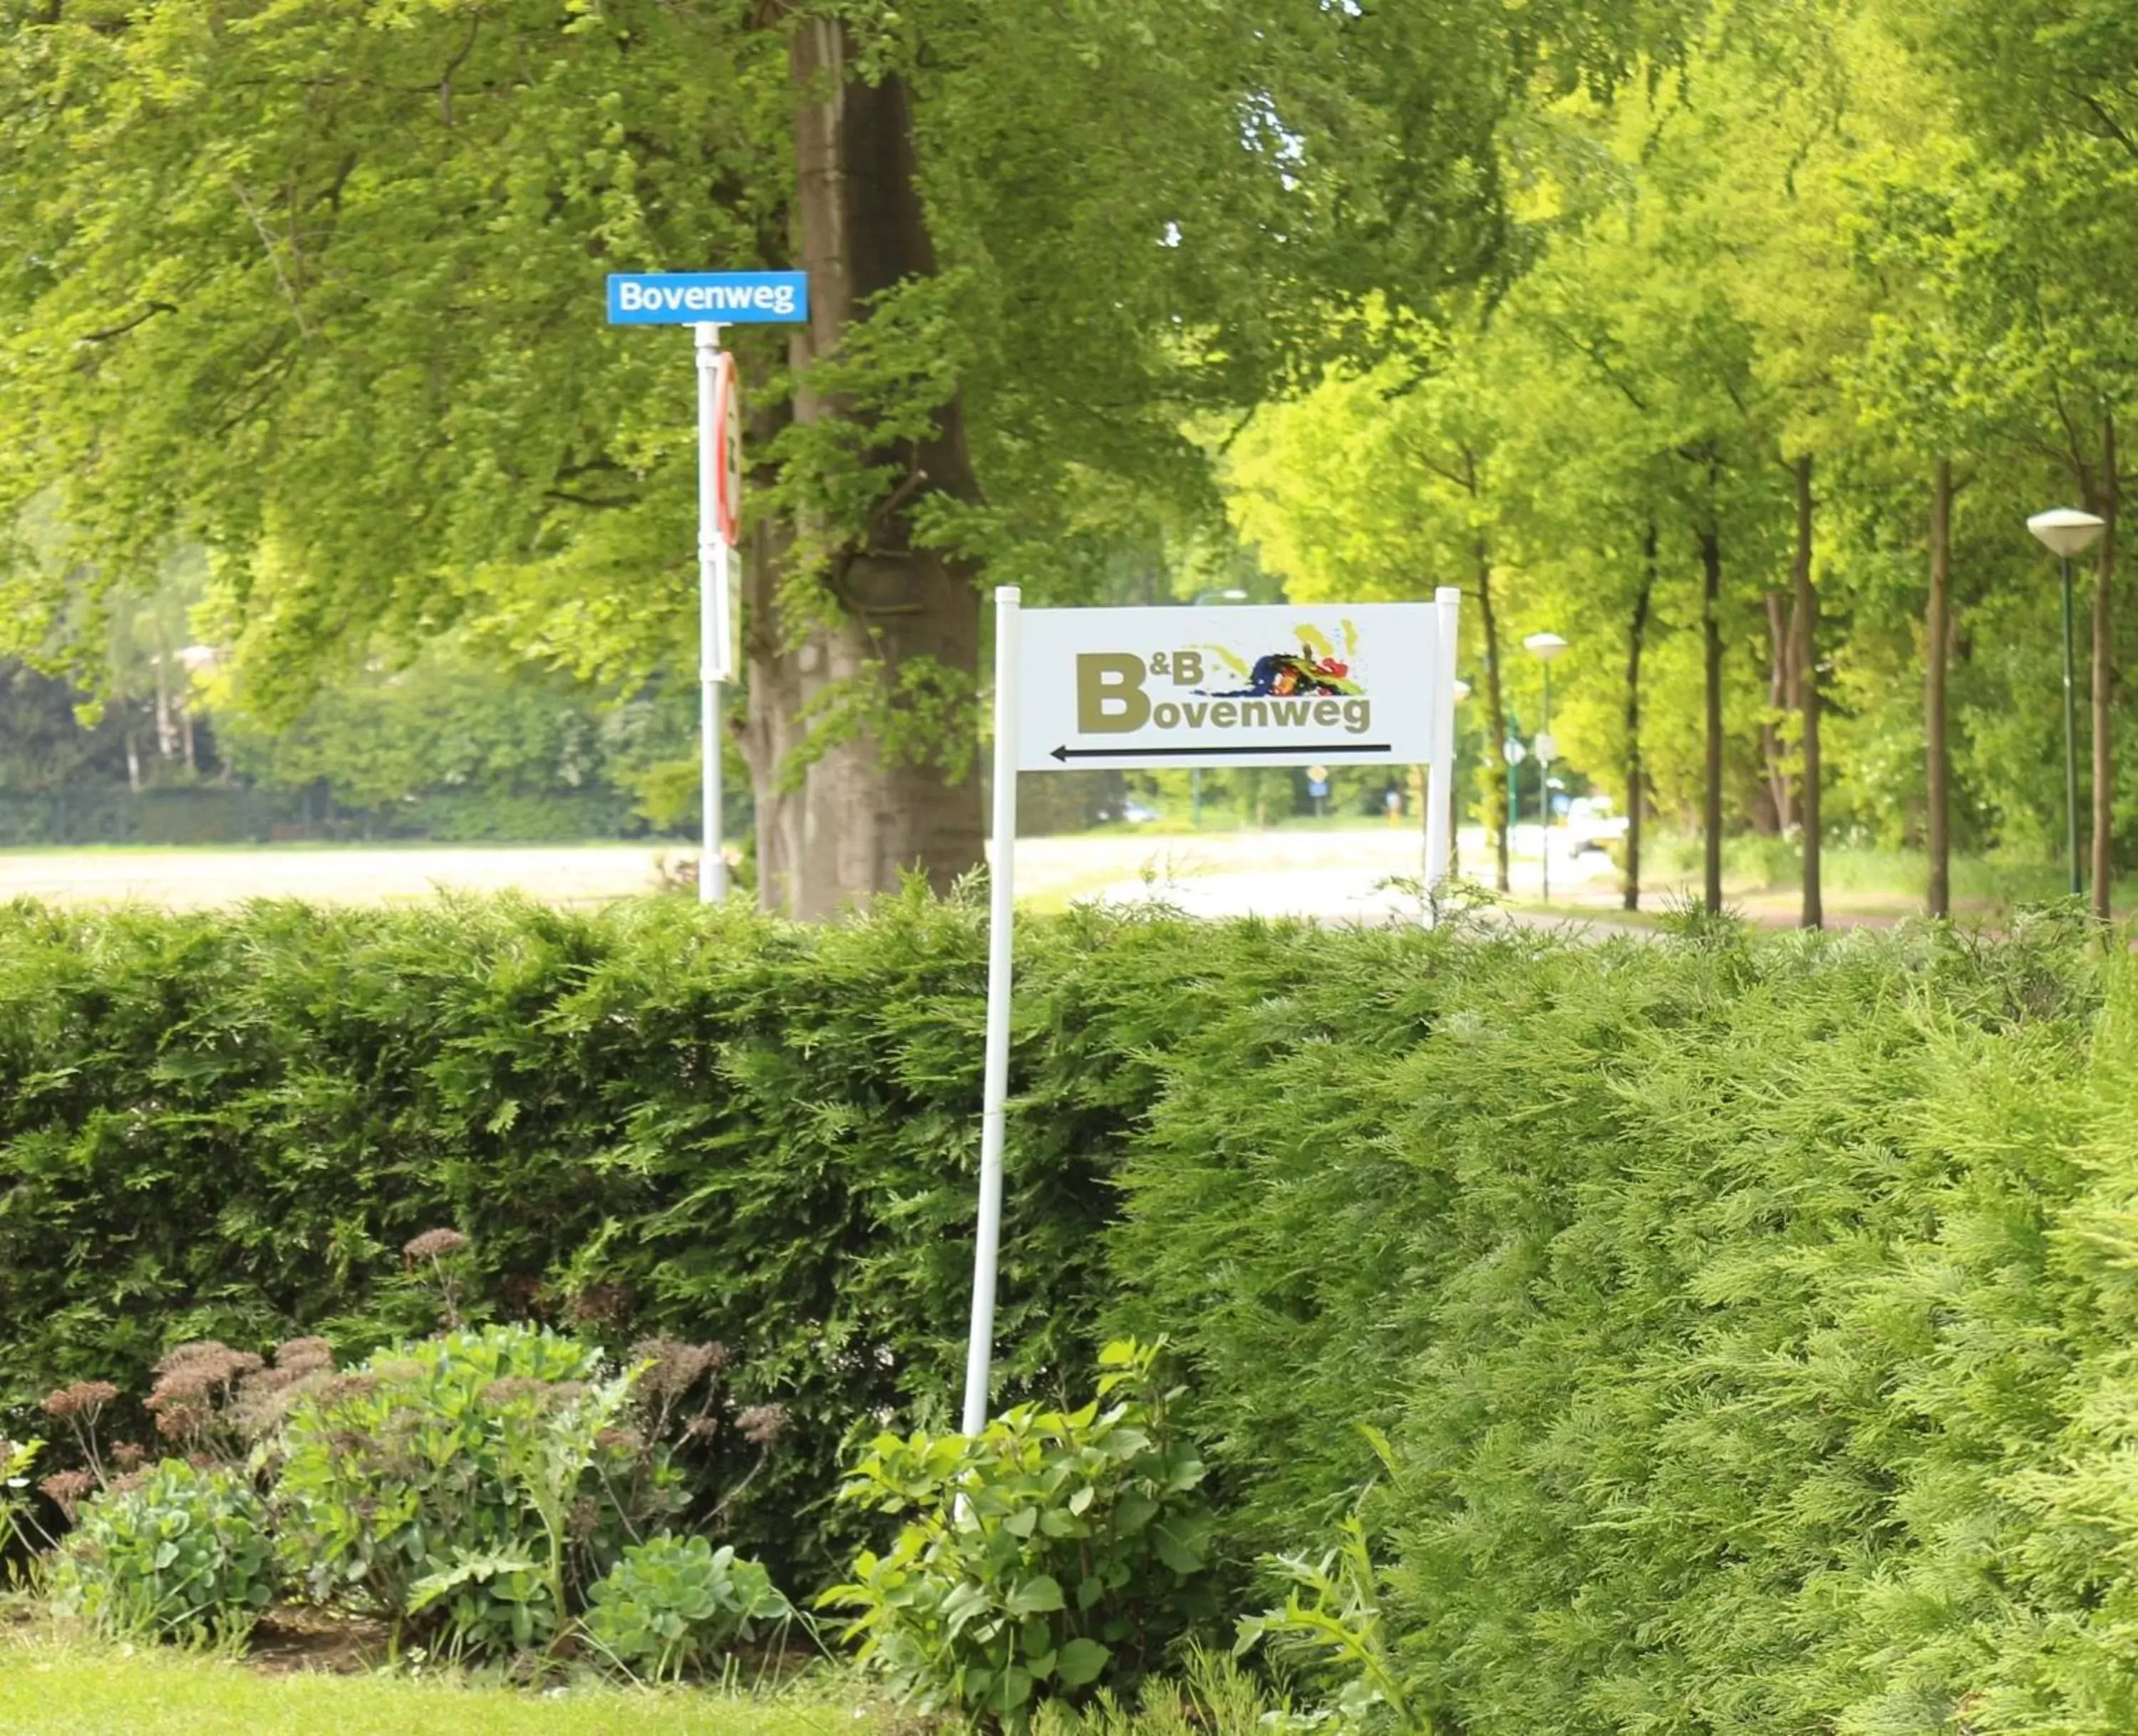 Property logo or sign in B&B Bovenweg